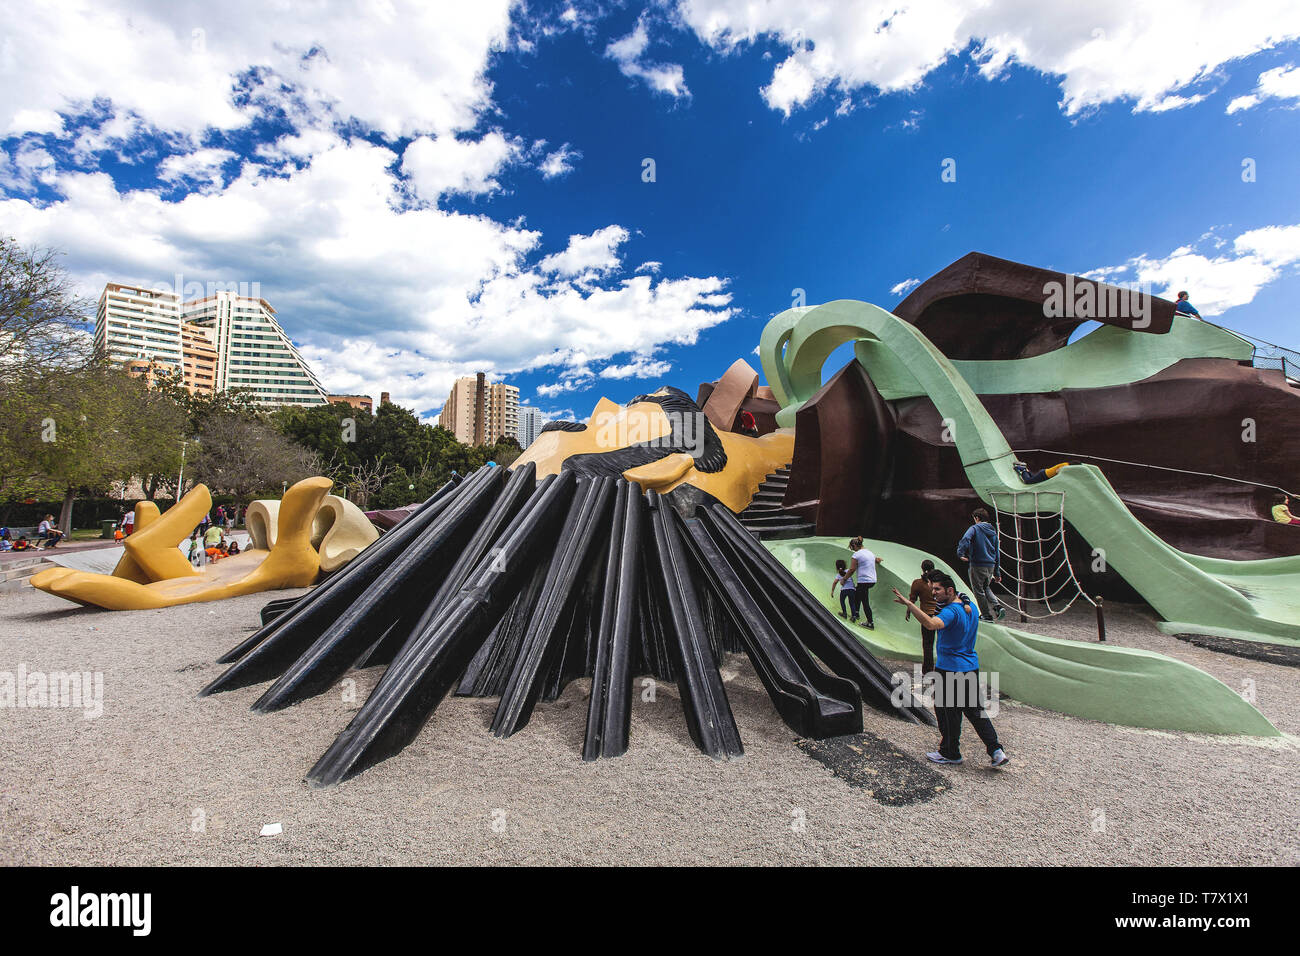 Spanien, Valencia, Gulliver Park im Herzen des Turia Gärten, die Hauptattraktion ist eine monumentale Skulptur von Gulliver 70 Meter Foto Federic Stockfoto